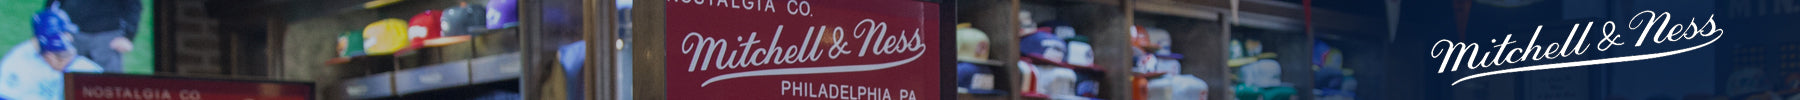 Mitchell & Ness header